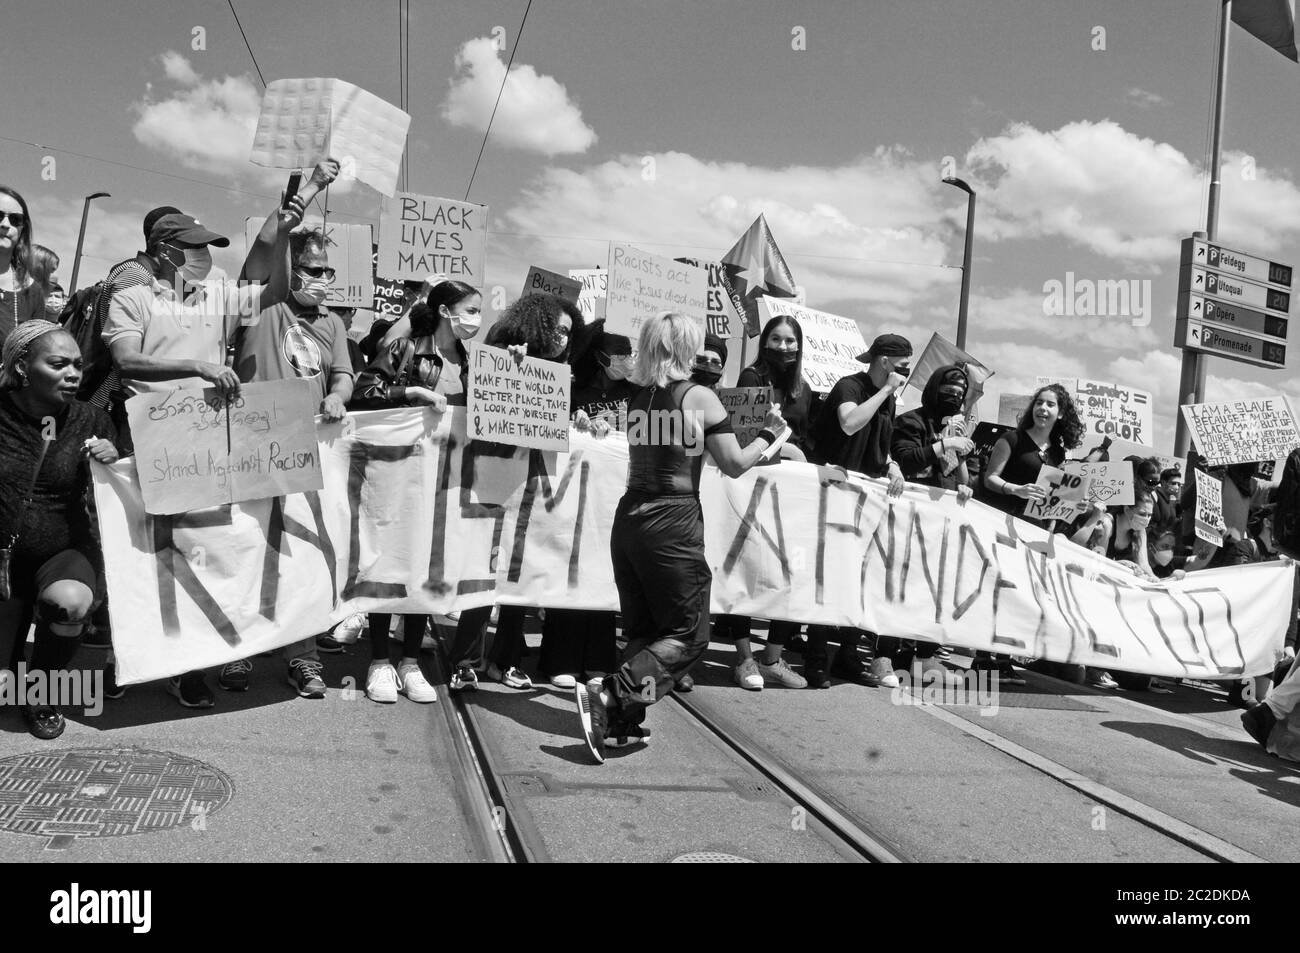 Zürich/Svizzera 13.06.2020: La vita nera conta Demonstraion a Zürich in tempi di Covid-19 Pandemie Foto Stock